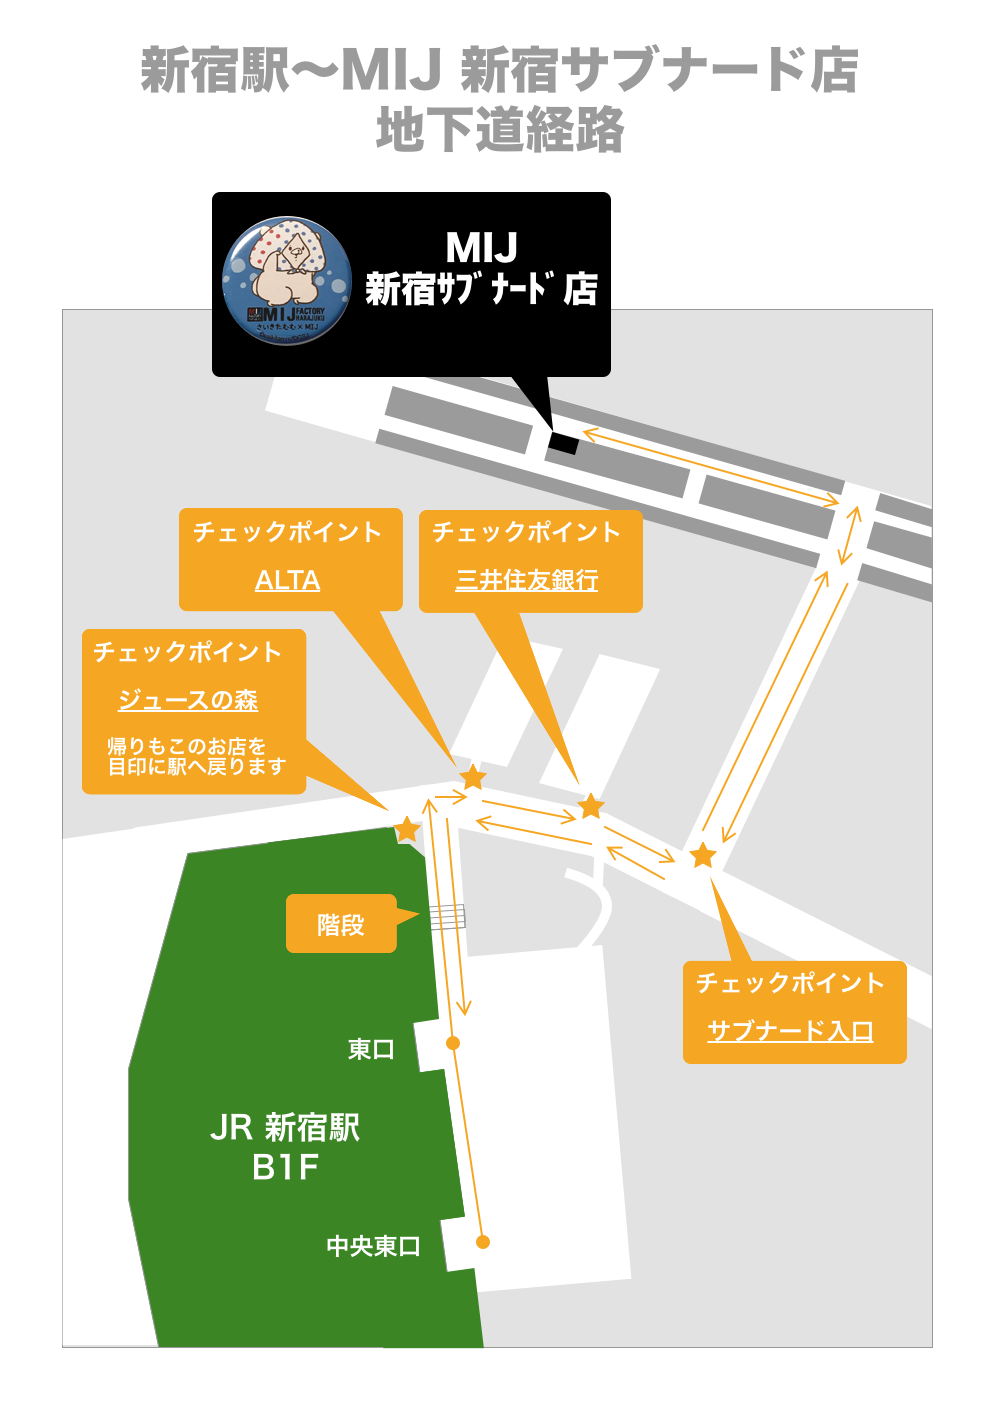 新宿駅〜MIJ 新宿サブナード店 地下道経路